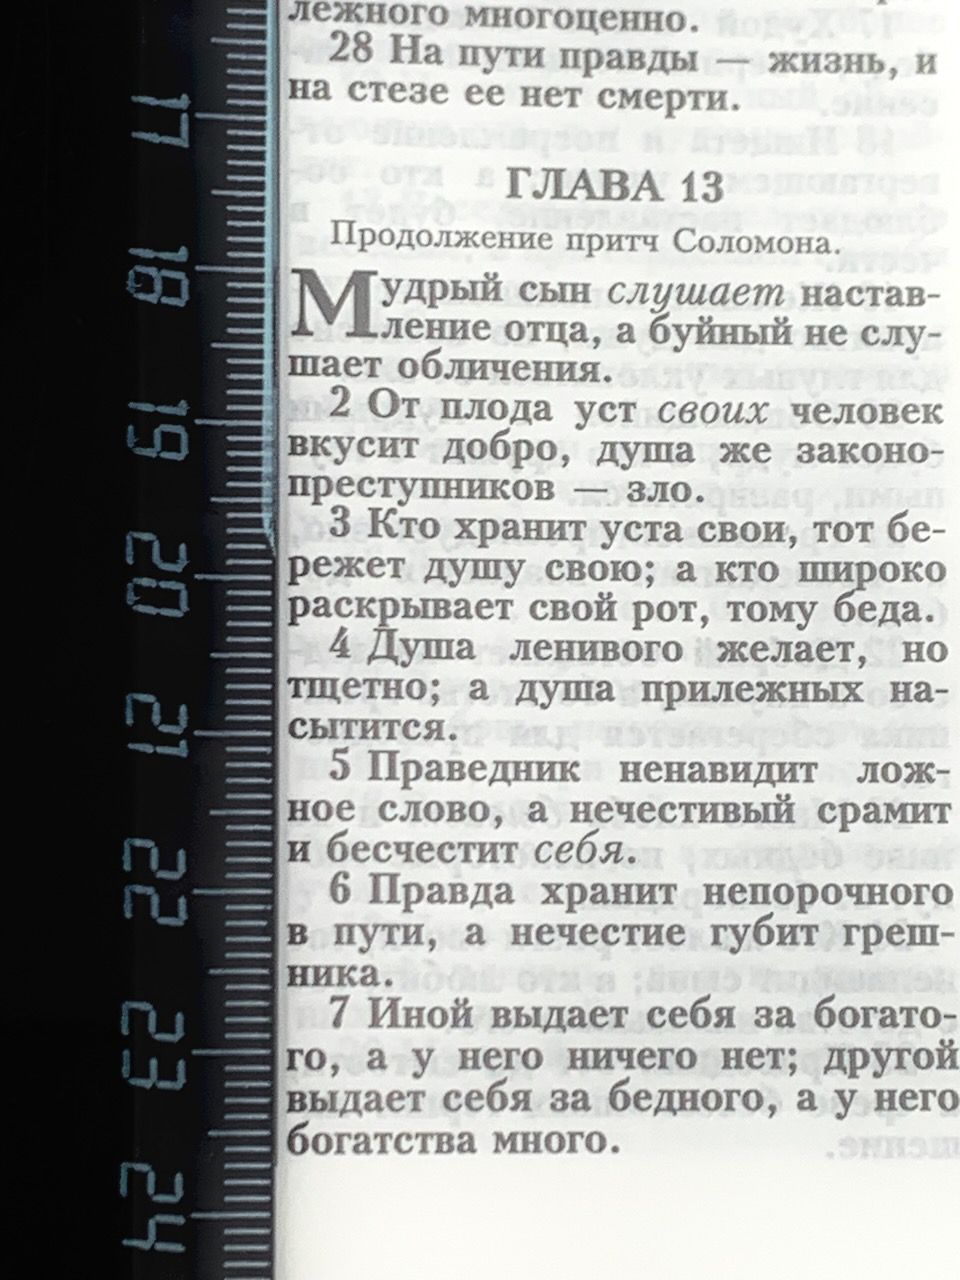 Библия 053zti код A8 надпись "Библия", кожаный переплет на молнии с индексами, цвет черный с прожилками, формат 140*202 мм